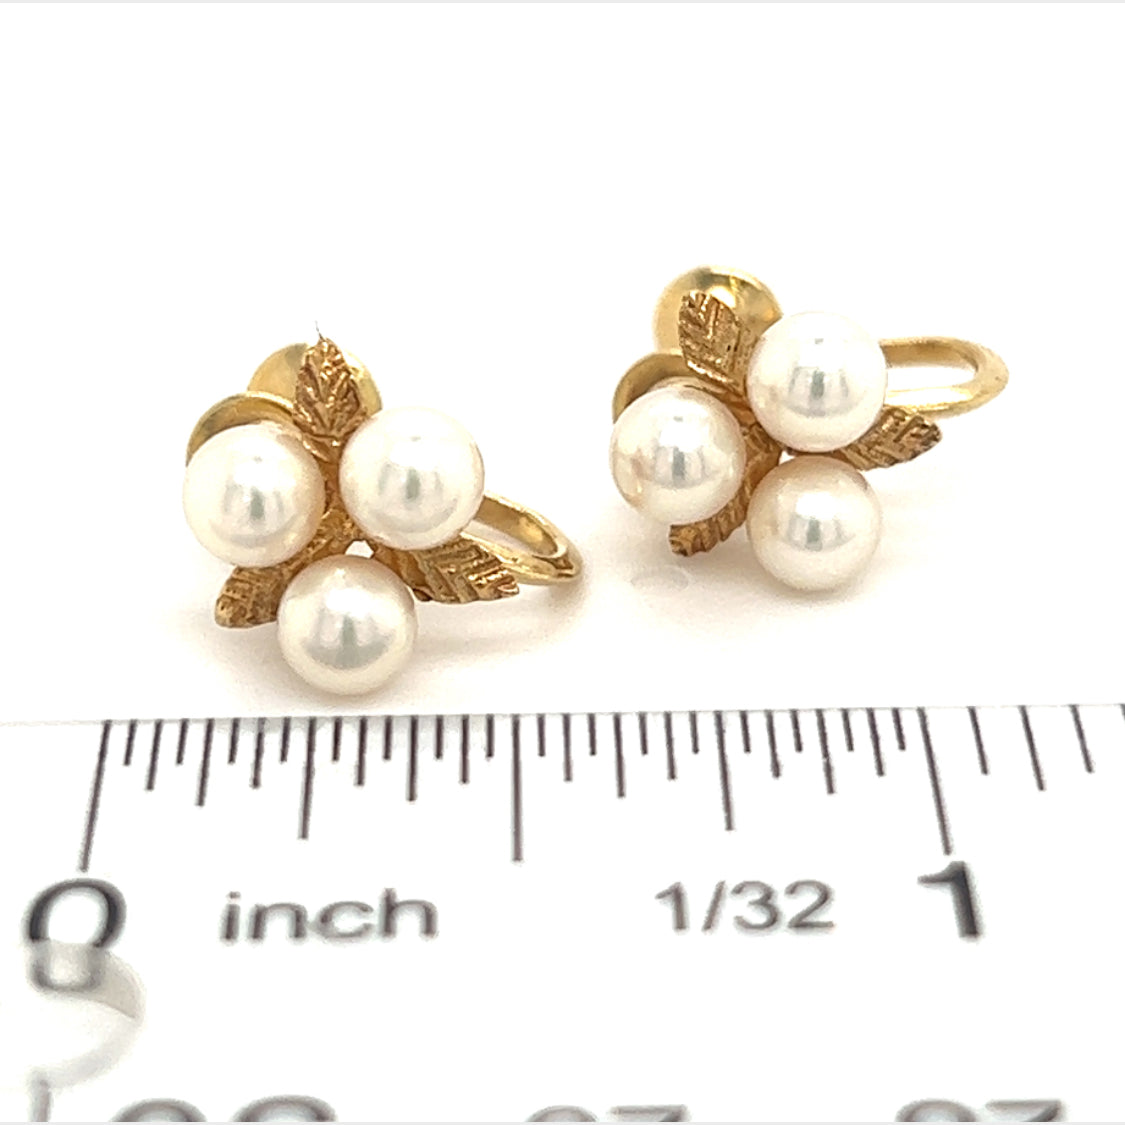 Mikimoto Estate Akoya Pearl Earrings 14k Y Gold 4.50 mm M267 - Certified Fine Jewelry